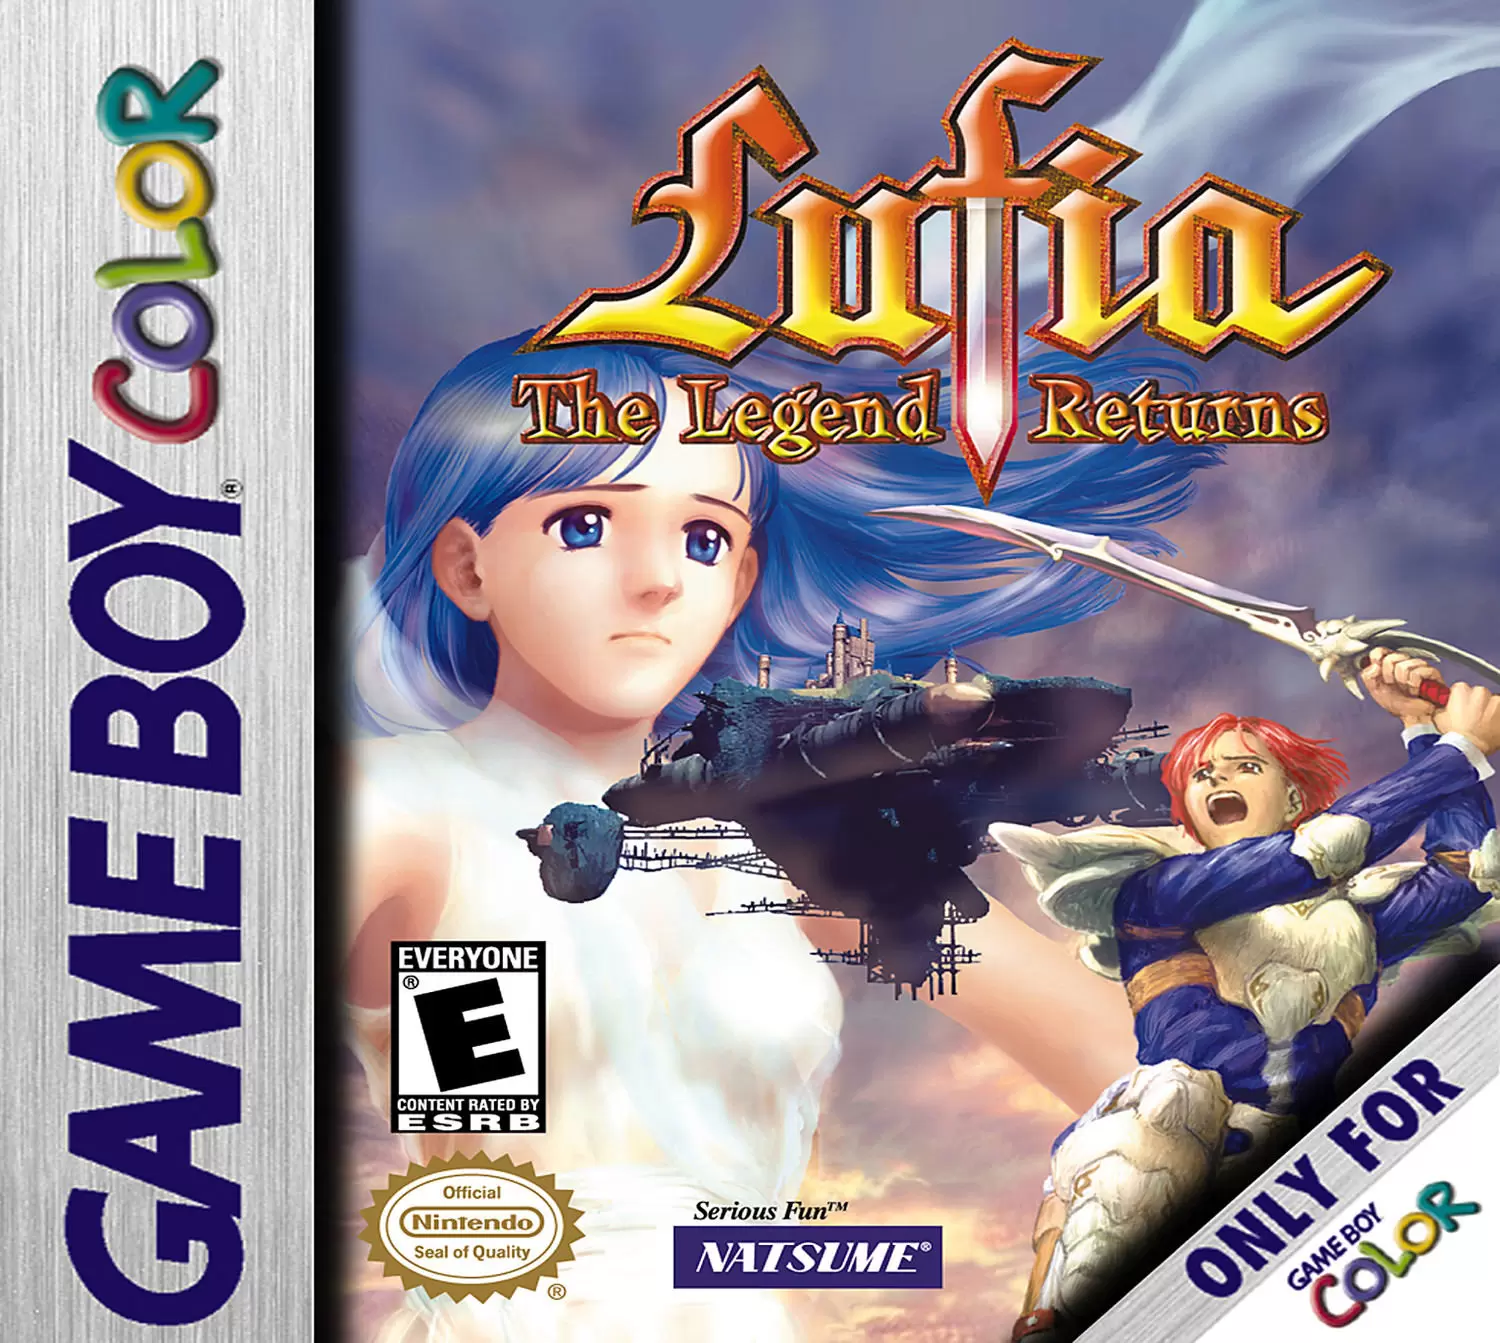 Game Boy Color Games - Lufia: The Legend Returns